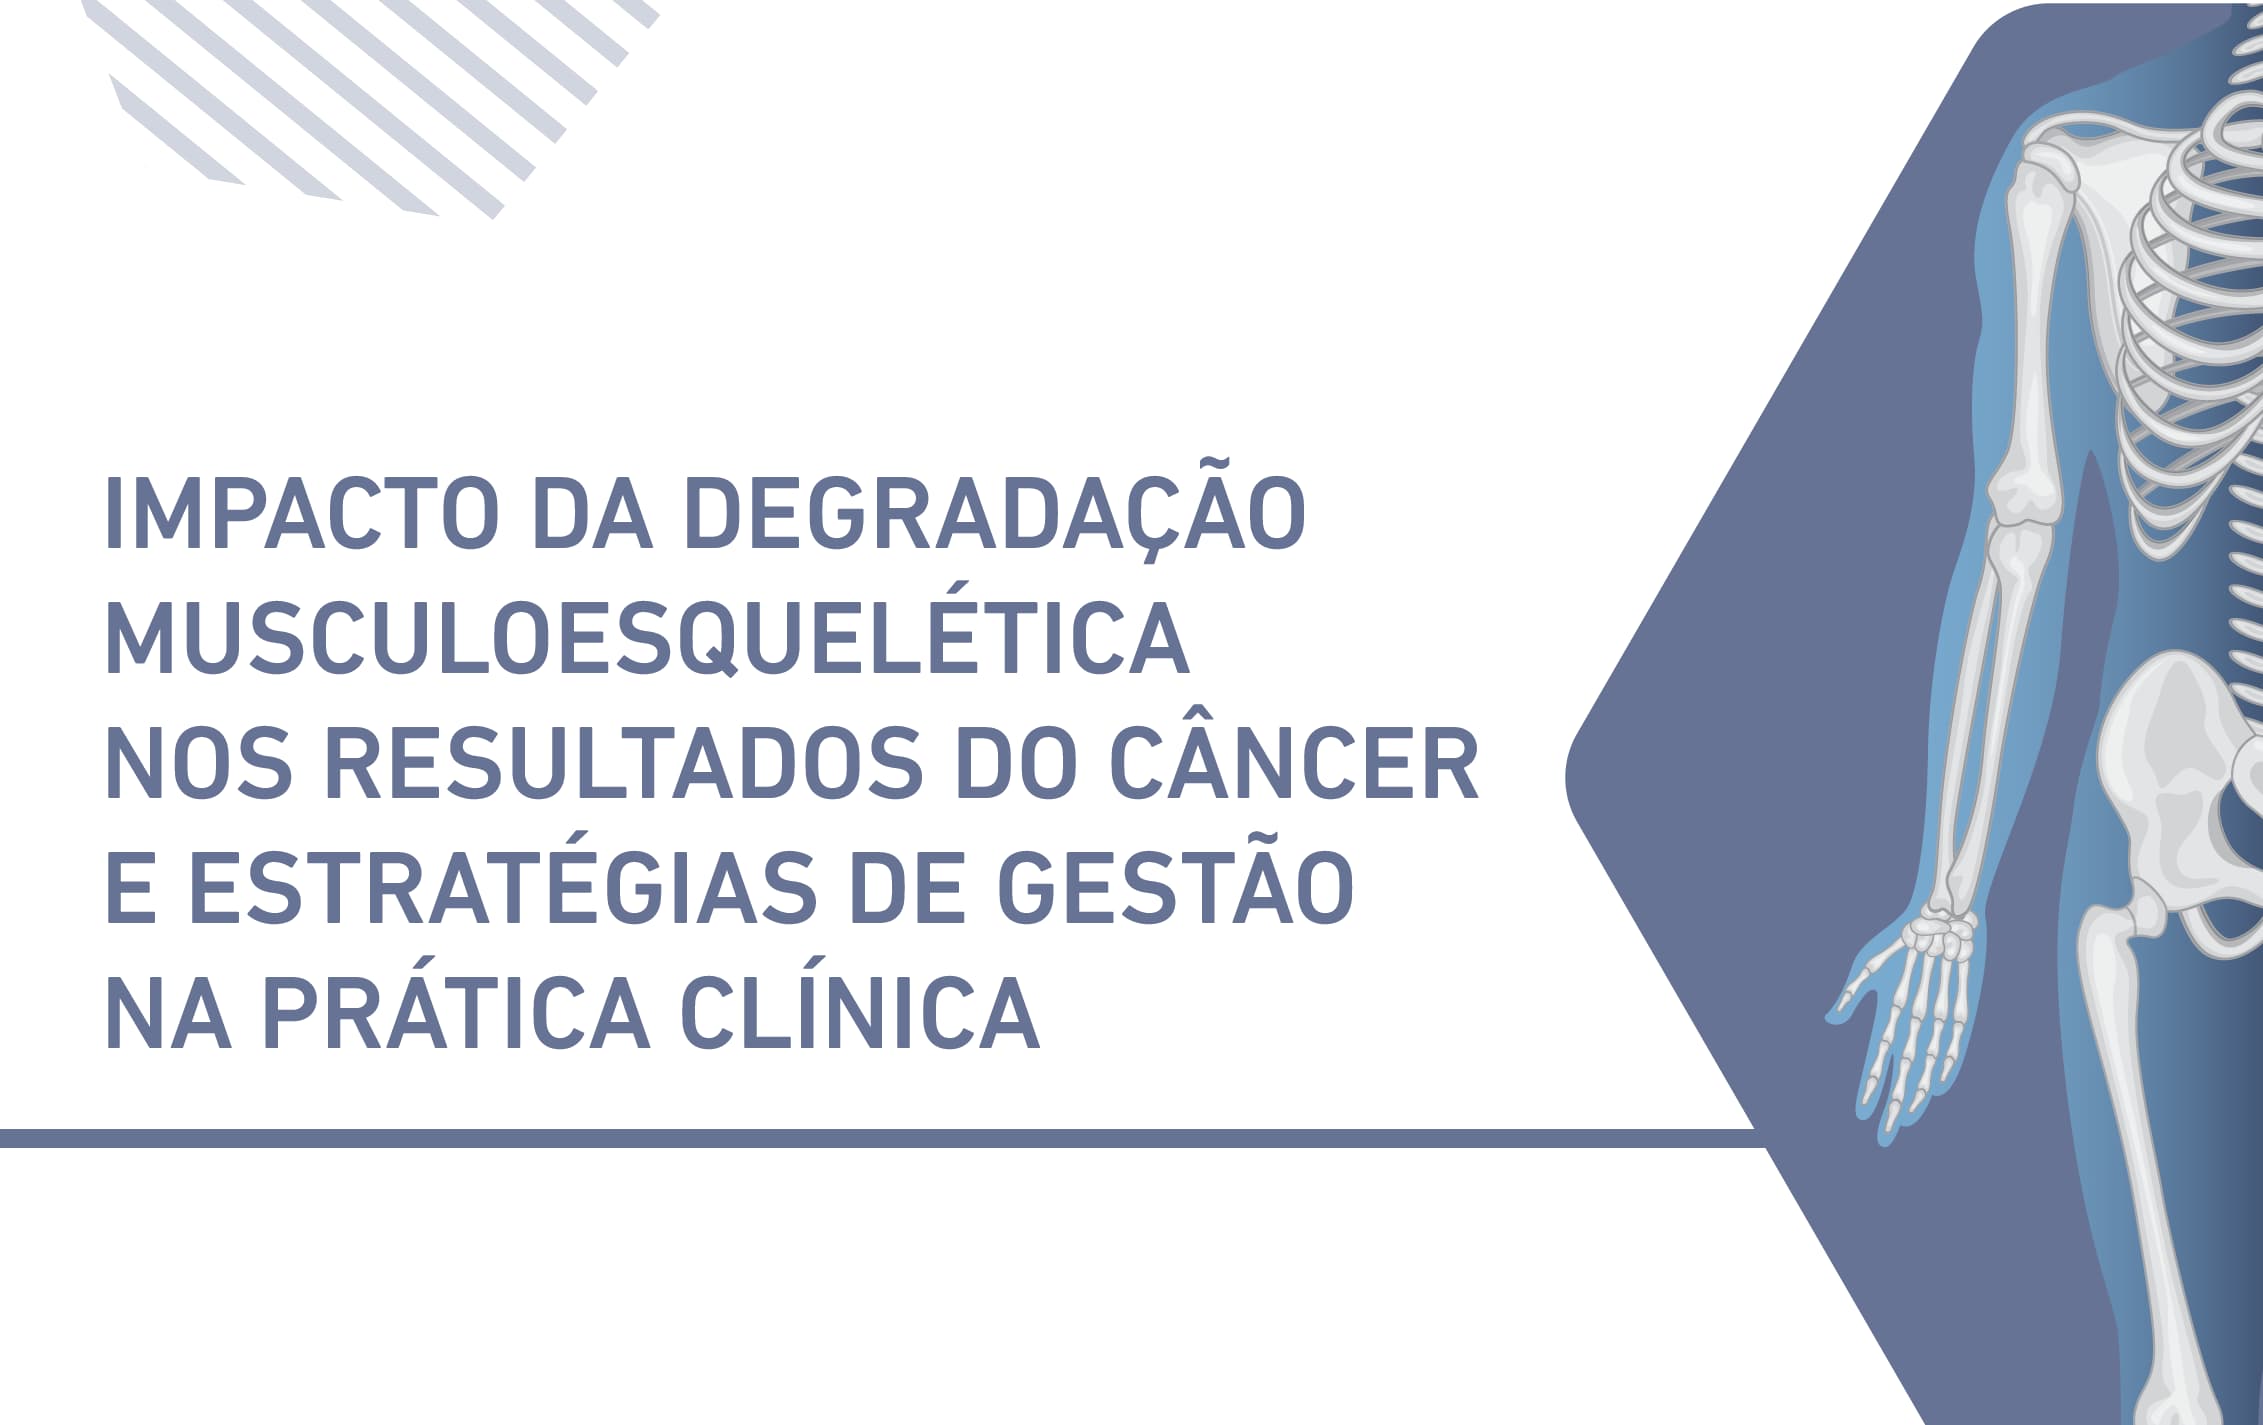 Impacto da degradação musculoesquelética nos resultados de câncer e estratégias de gestão na prática clínica